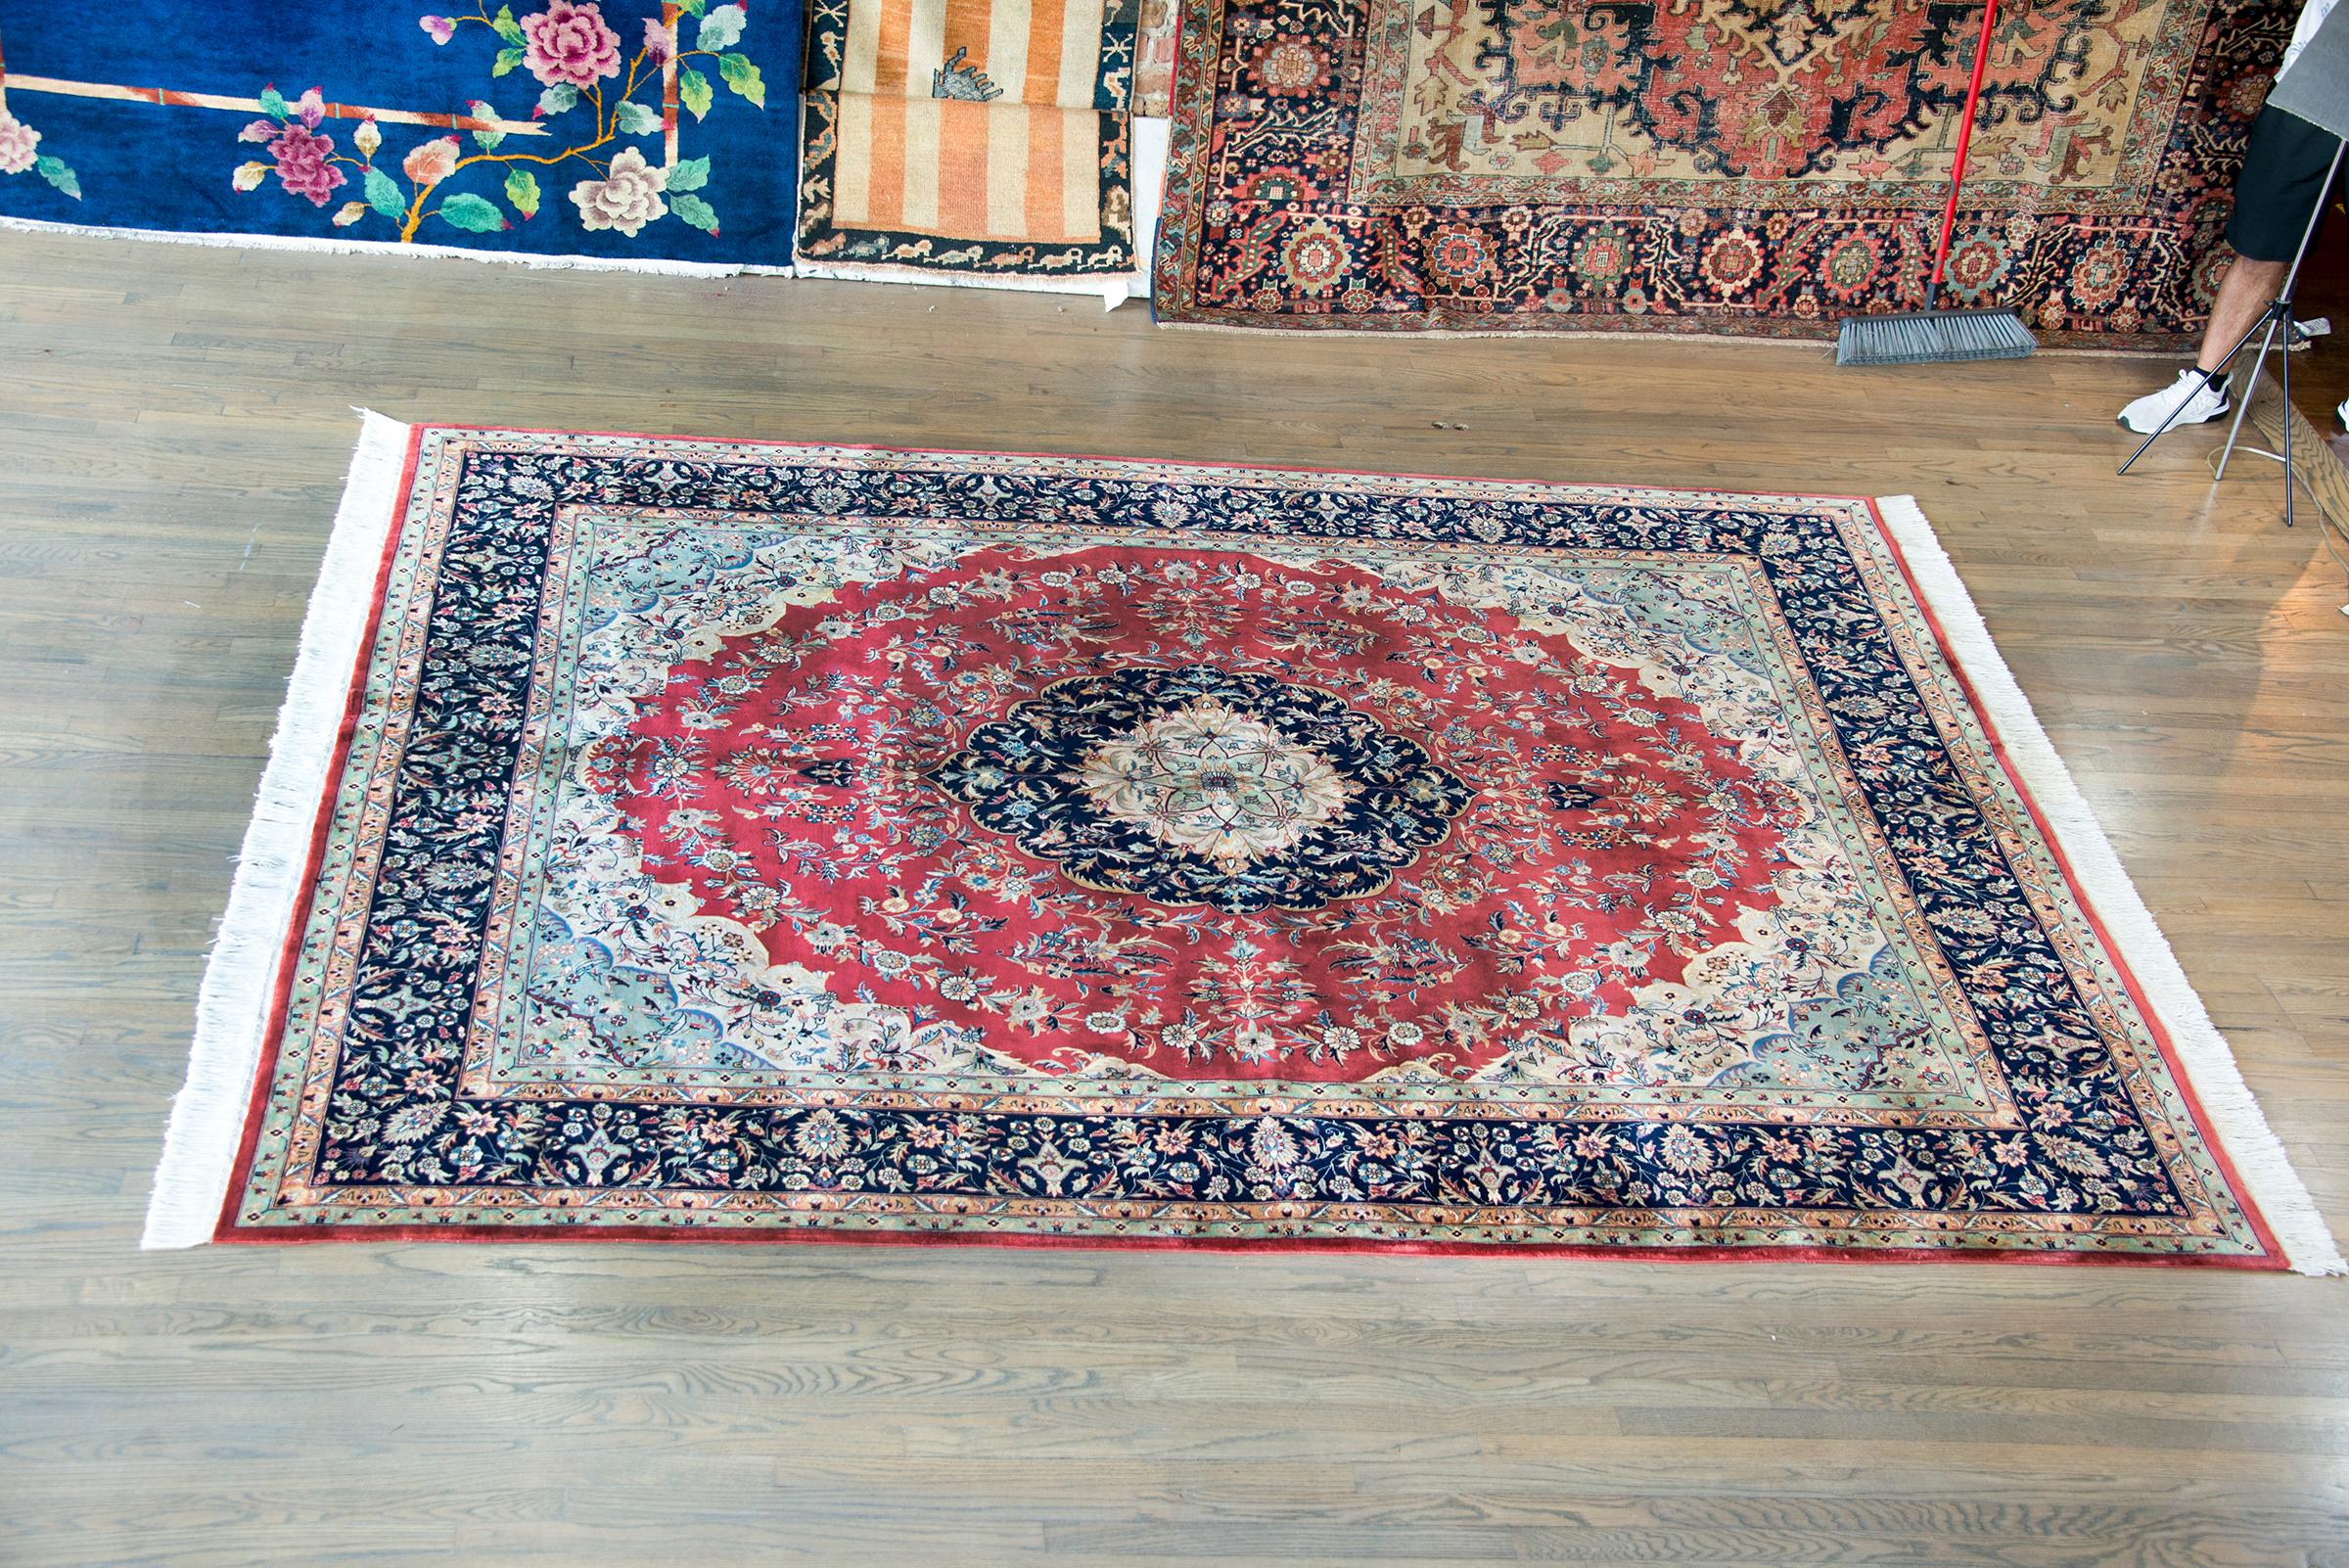 Ein wundervoller indischer Teppich im Tabriz-Stil aus dem späten 20. Jahrhundert mit einem großen, komplexen Medaillon in der Mitte, das mit unzähligen stilisierten Blumen und Blättern gewebt ist und in Karminrot, Indigo, Creme, Gold und Grün